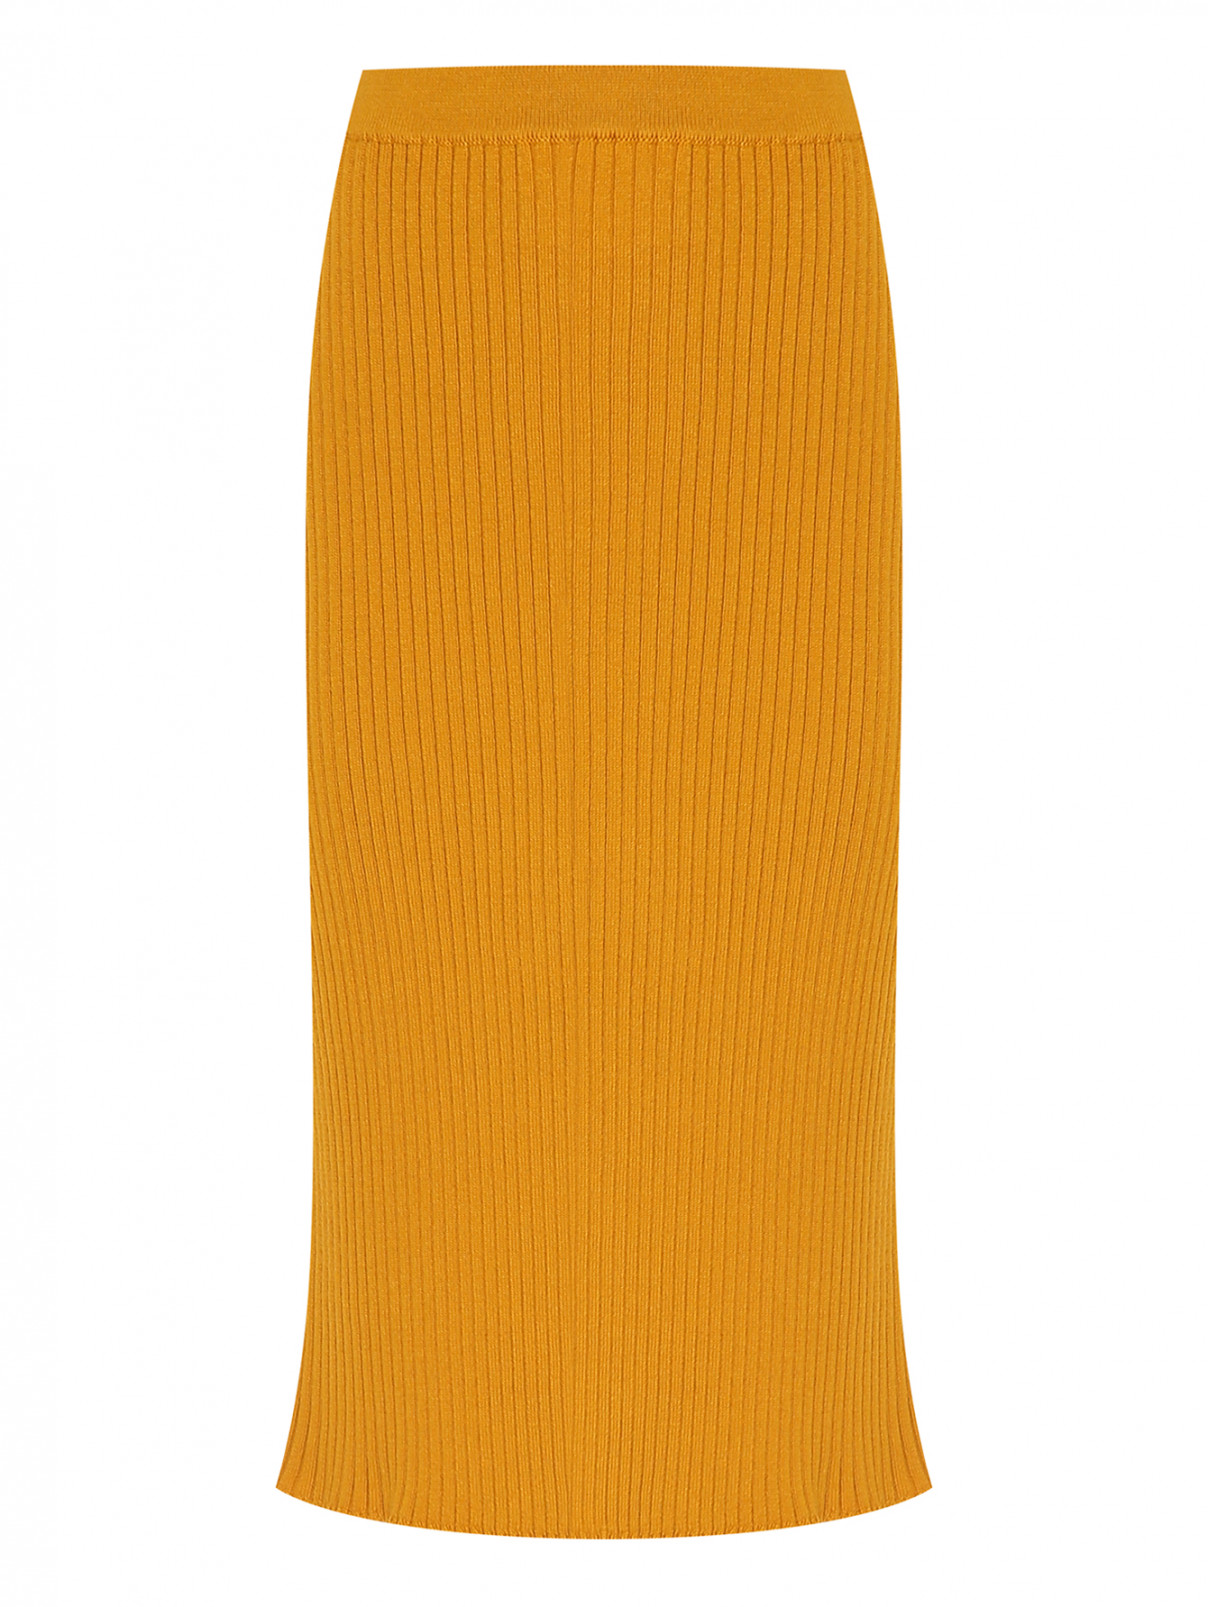 Юбка-трикотажная в рубчик Luisa Spagnoli  –  Общий вид  – Цвет:  Желтый